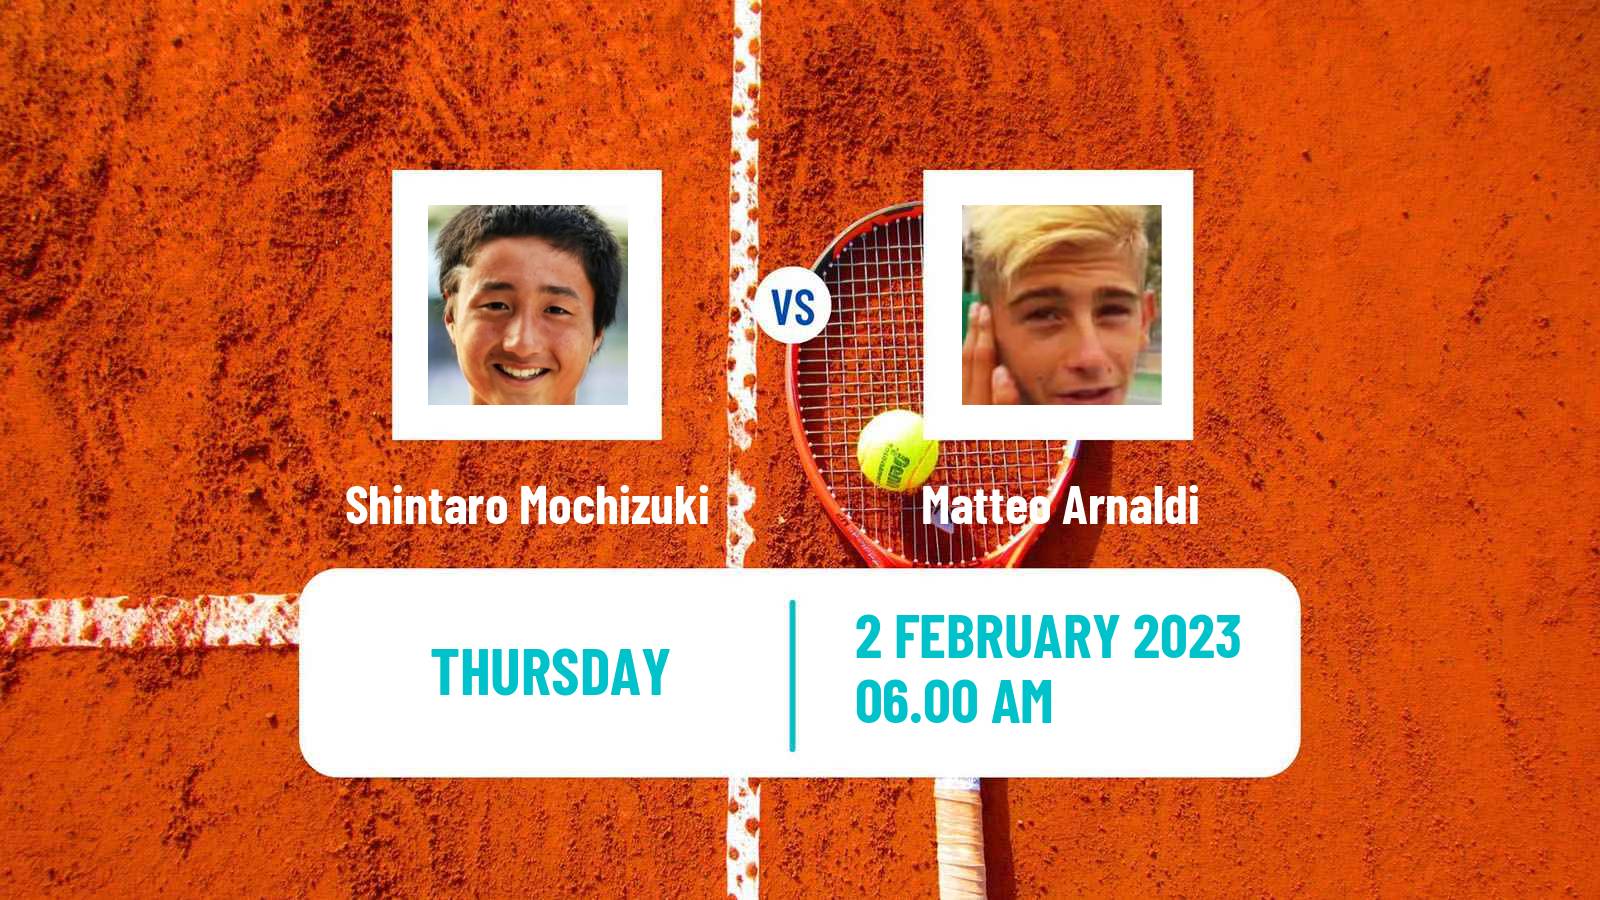 Tennis ATP Challenger Shintaro Mochizuki - Matteo Arnaldi